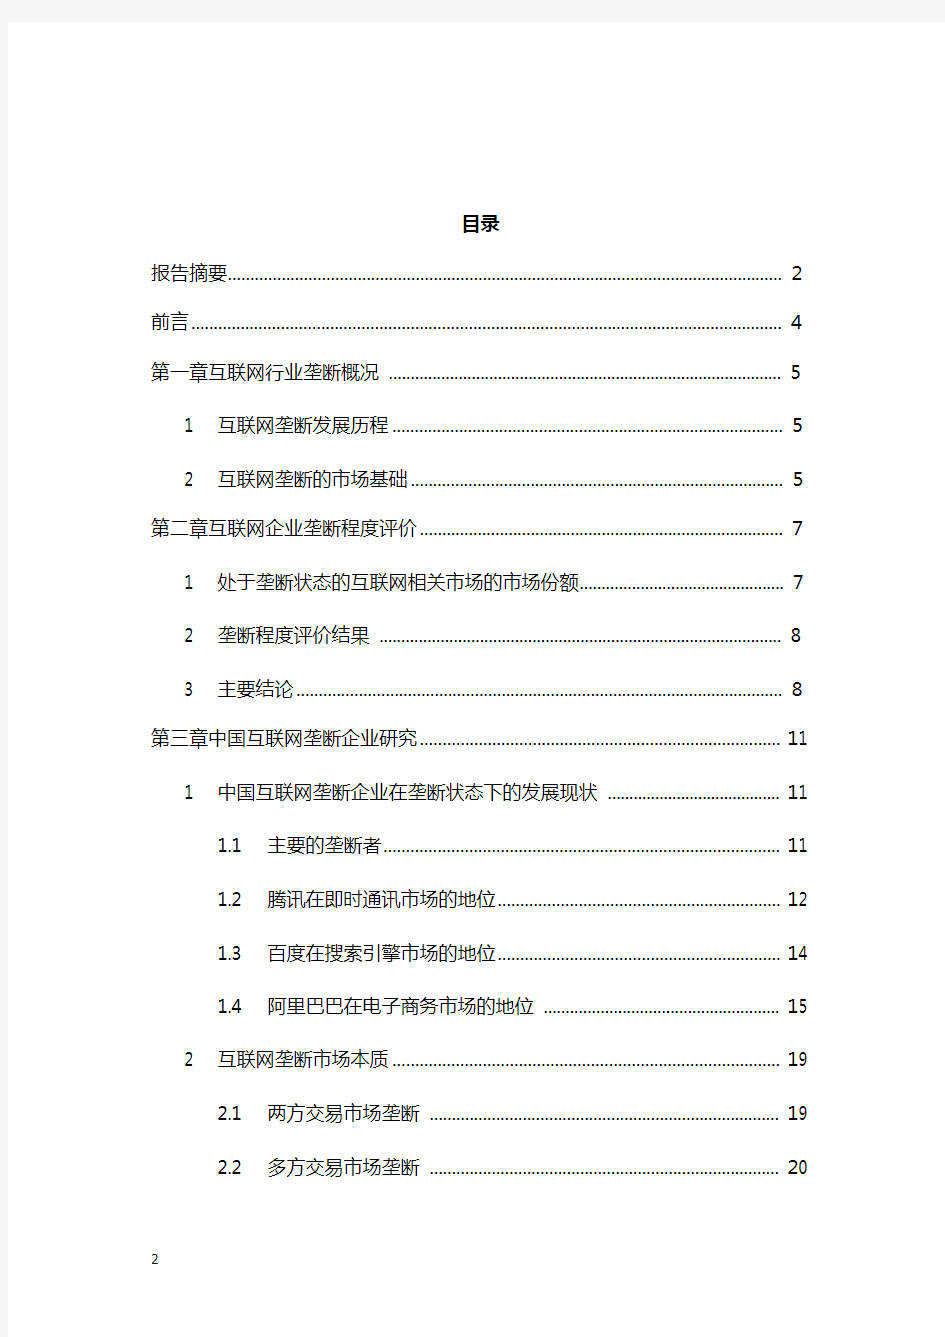 中国国内互联网行业垄断状况调查及对策研究分析报告